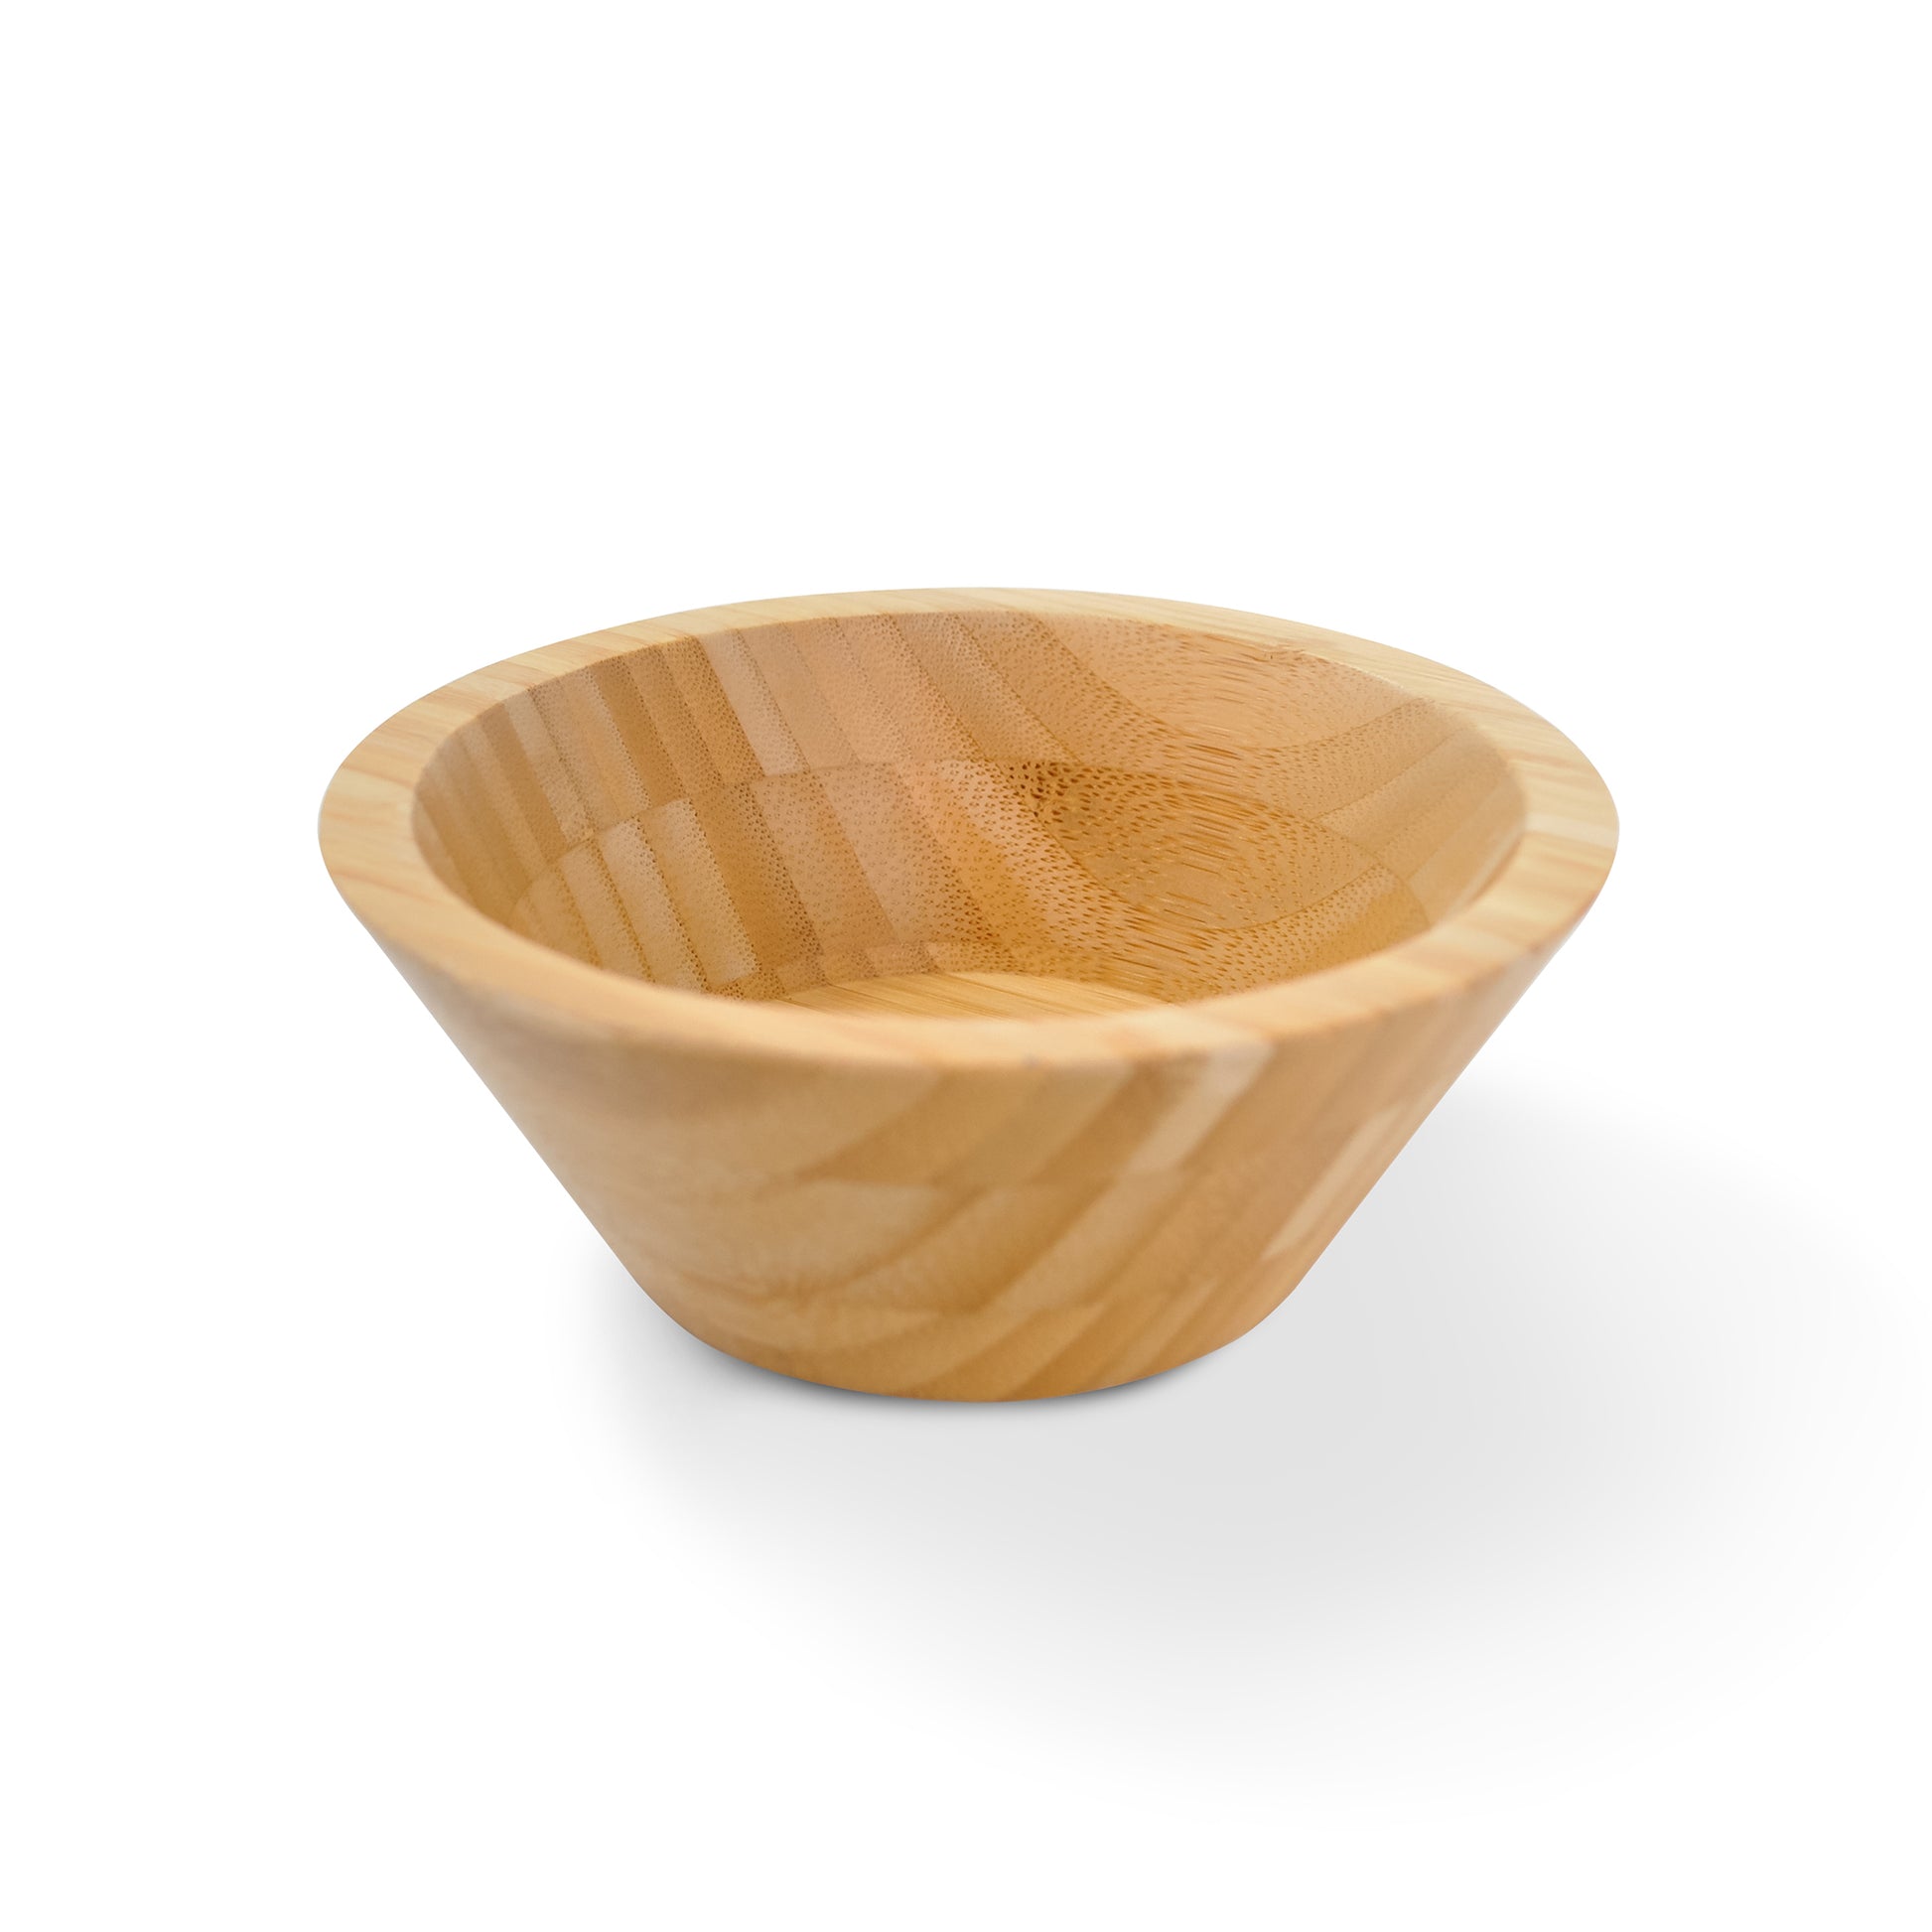 Le'K Bamboo Spa Manicure Bowl